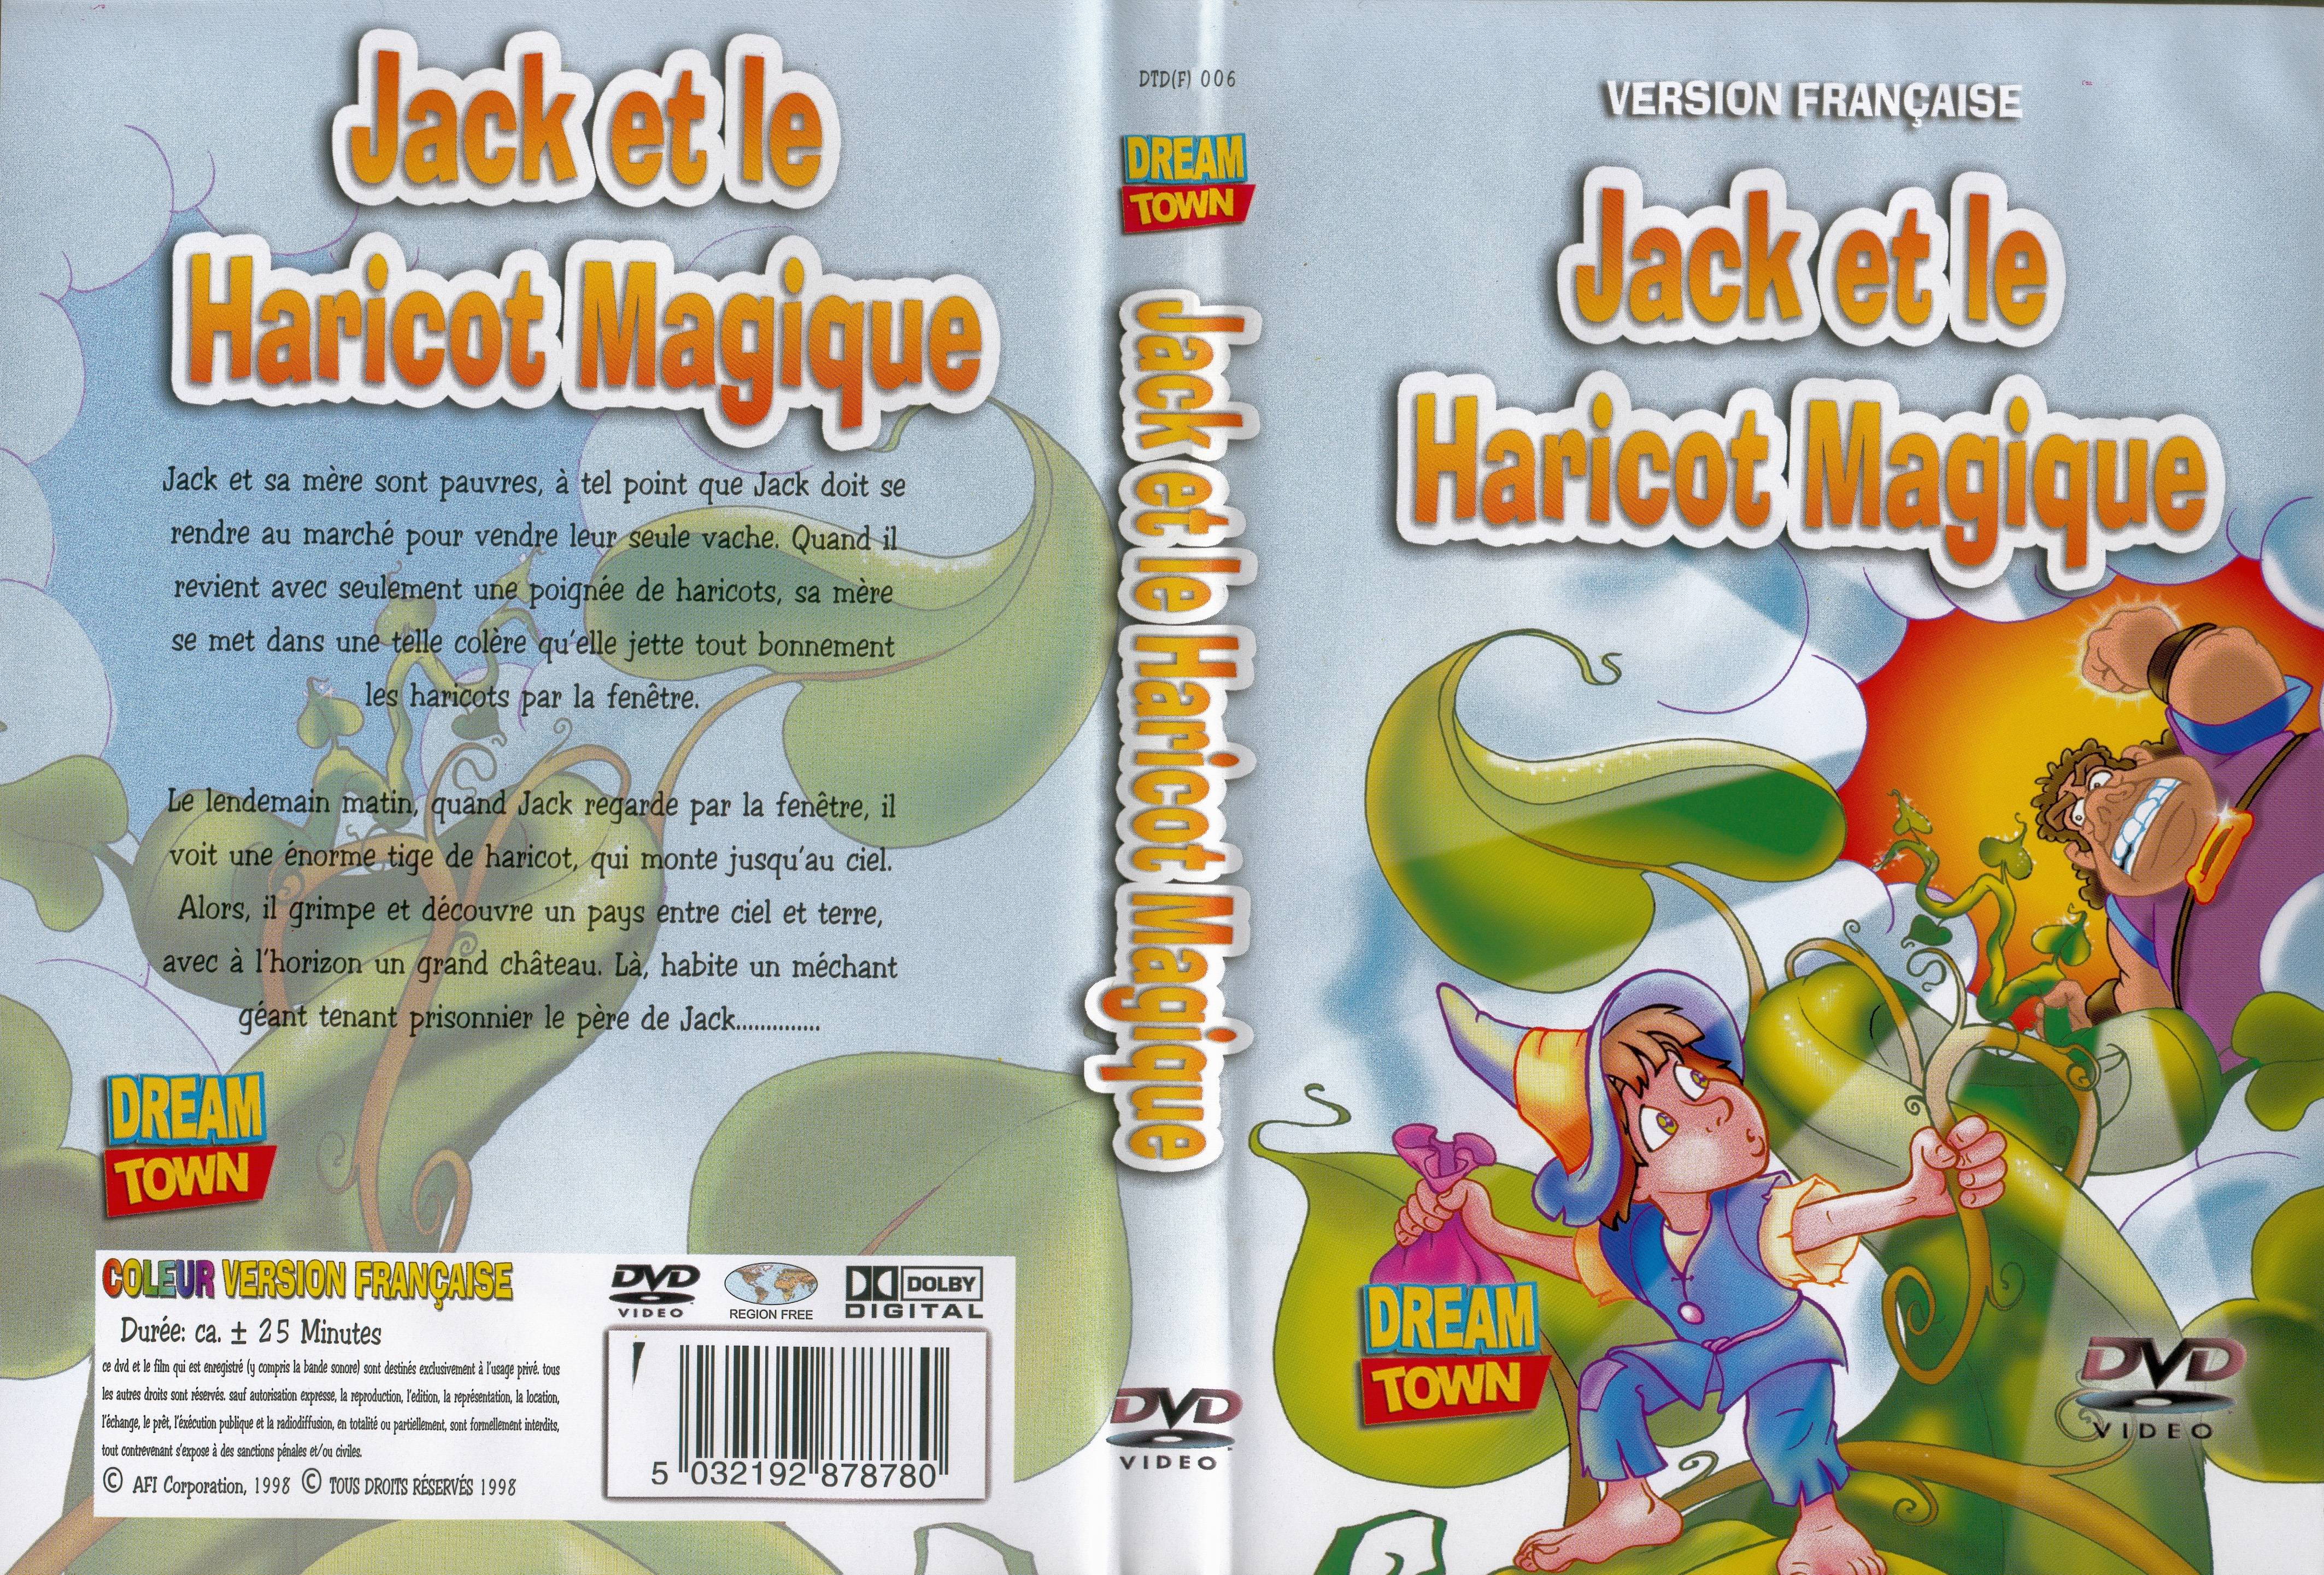 Jaquette DVD Jack et le haricot magique (1998)